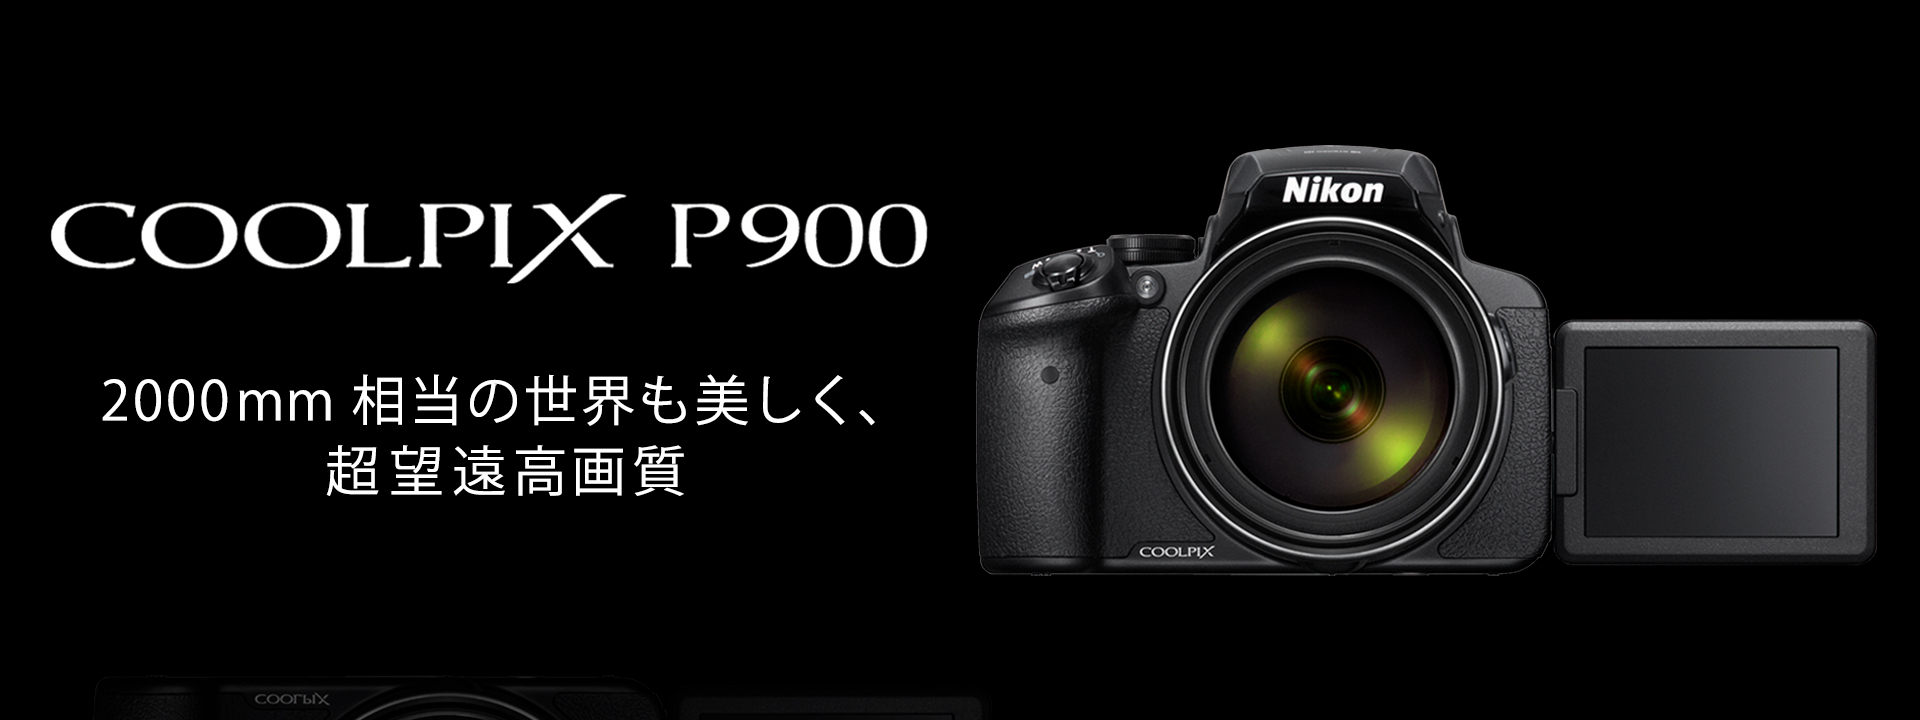 COOLPIX P900 - 概要 | コンパクトデジタルカメラ | ニコンイメージング